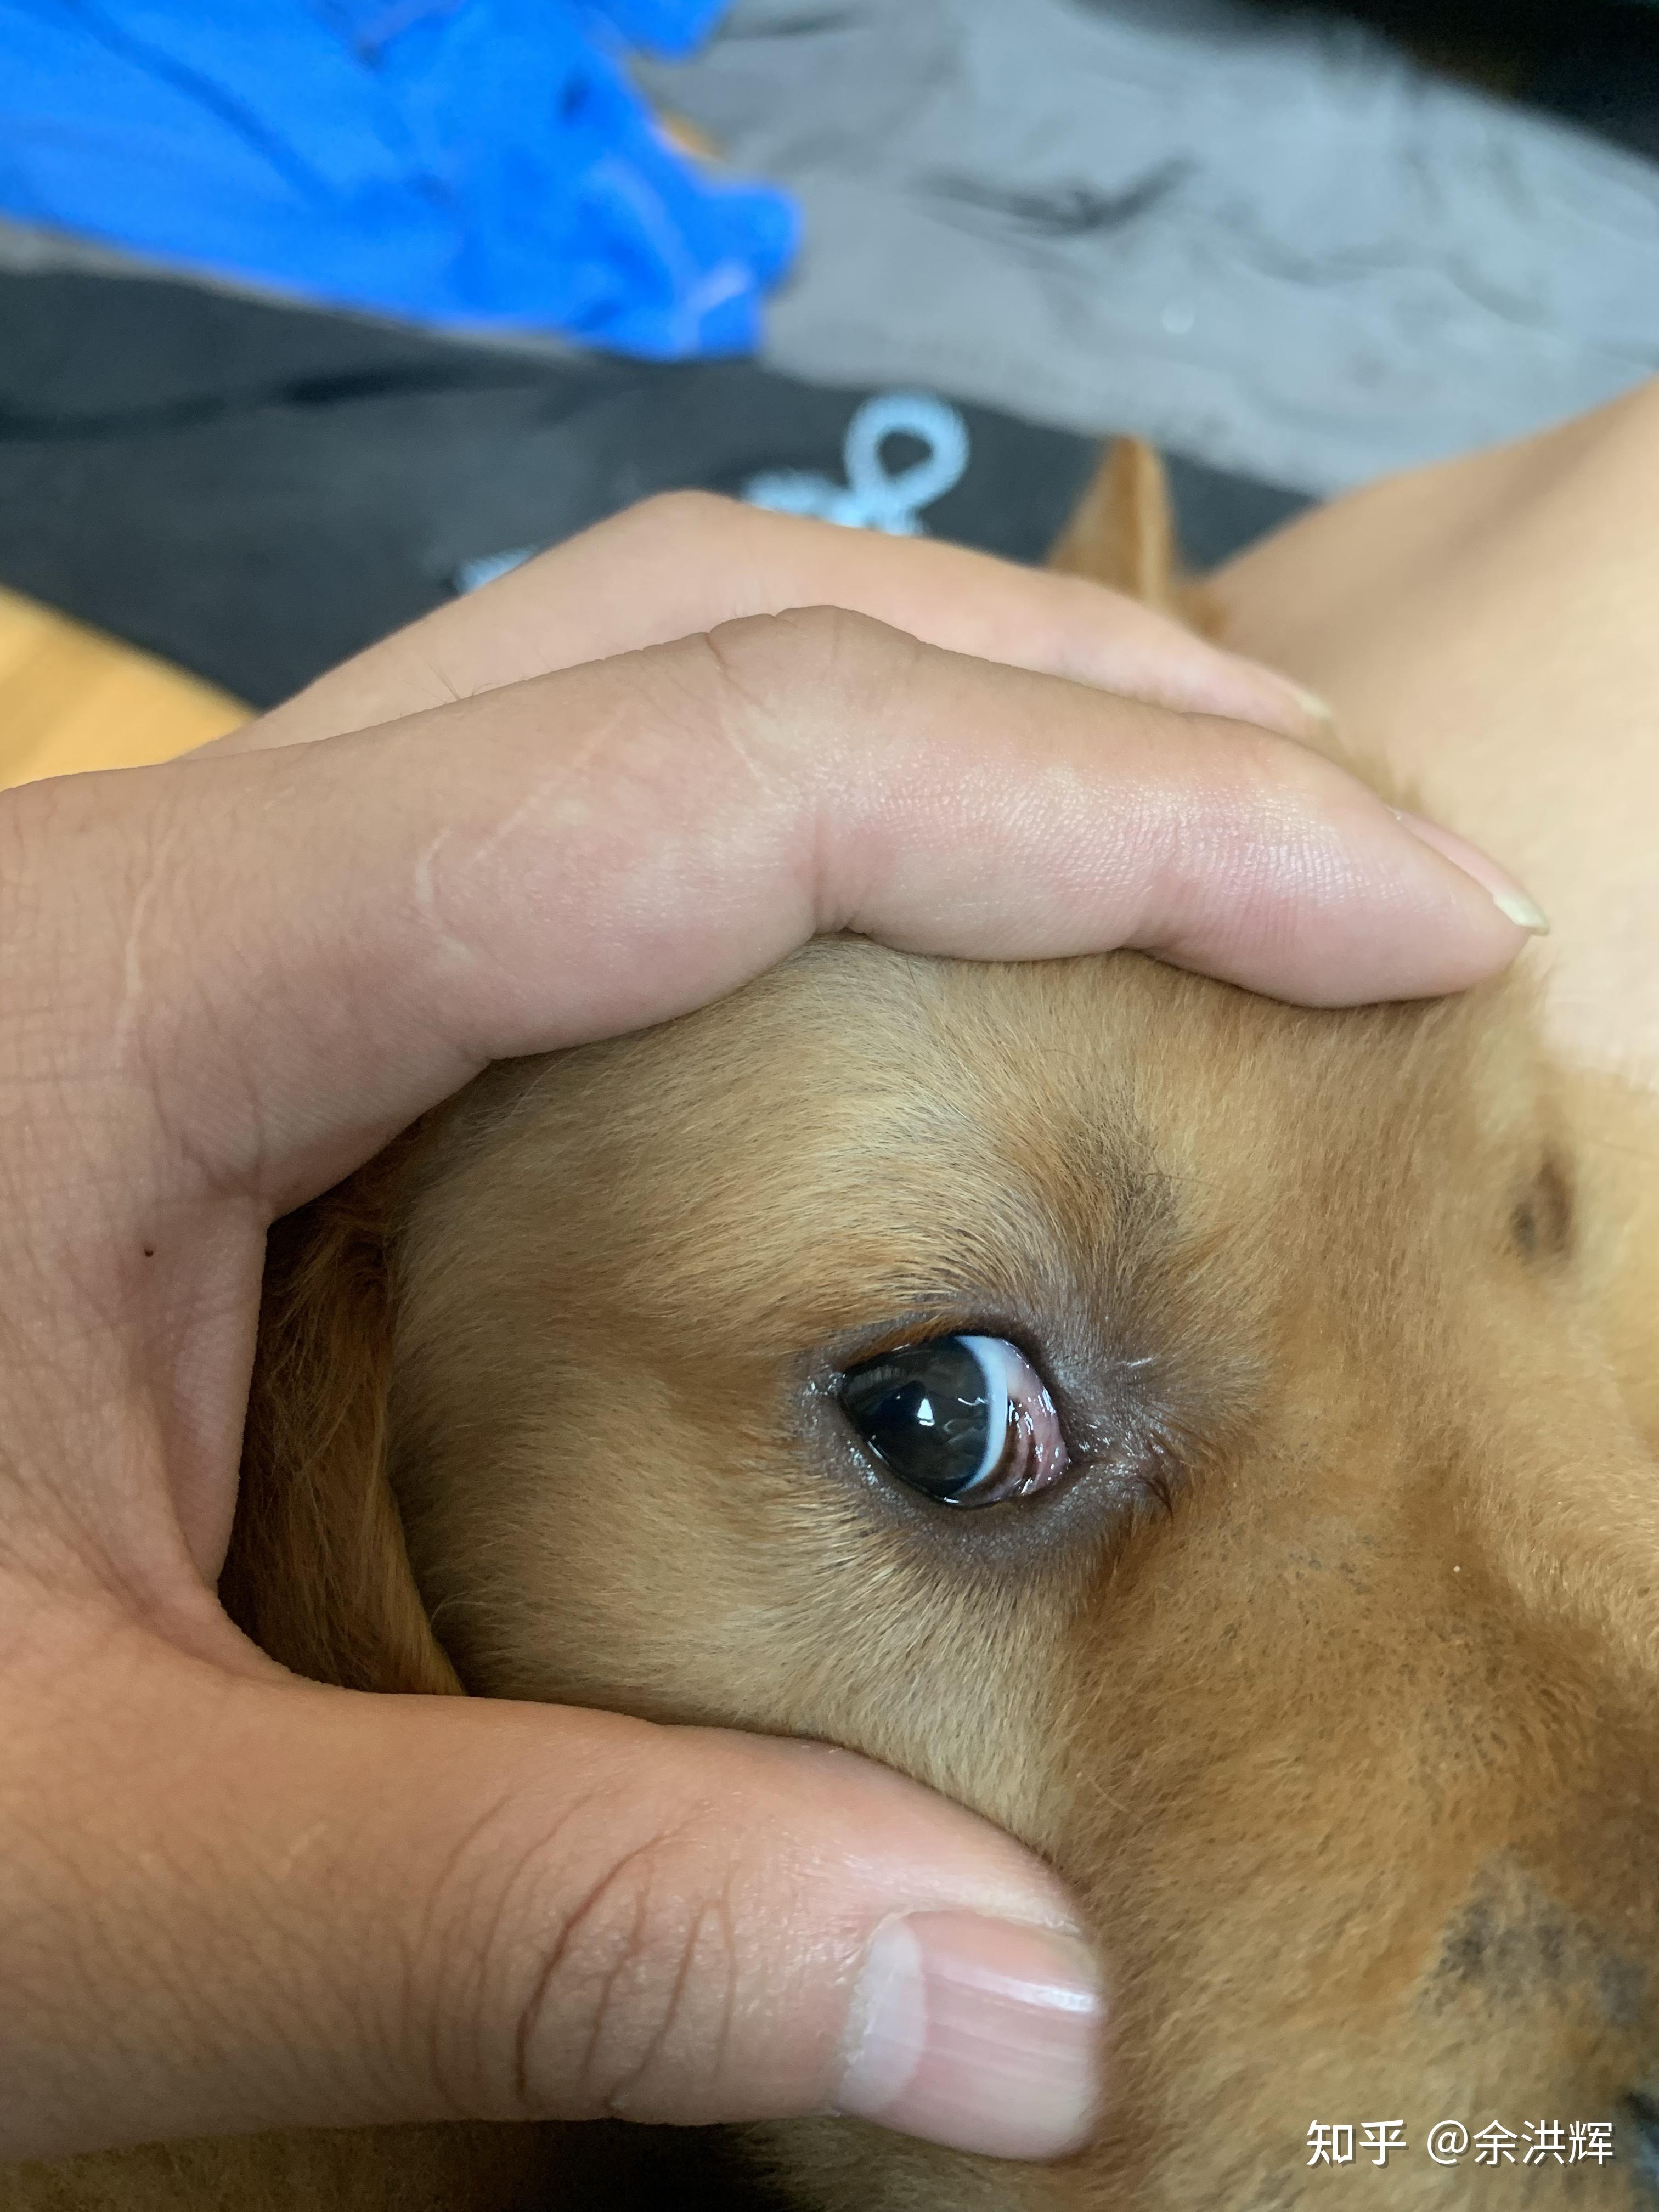 想知道狗狗内眼角那侧的眼白上有条黑线是什么? 